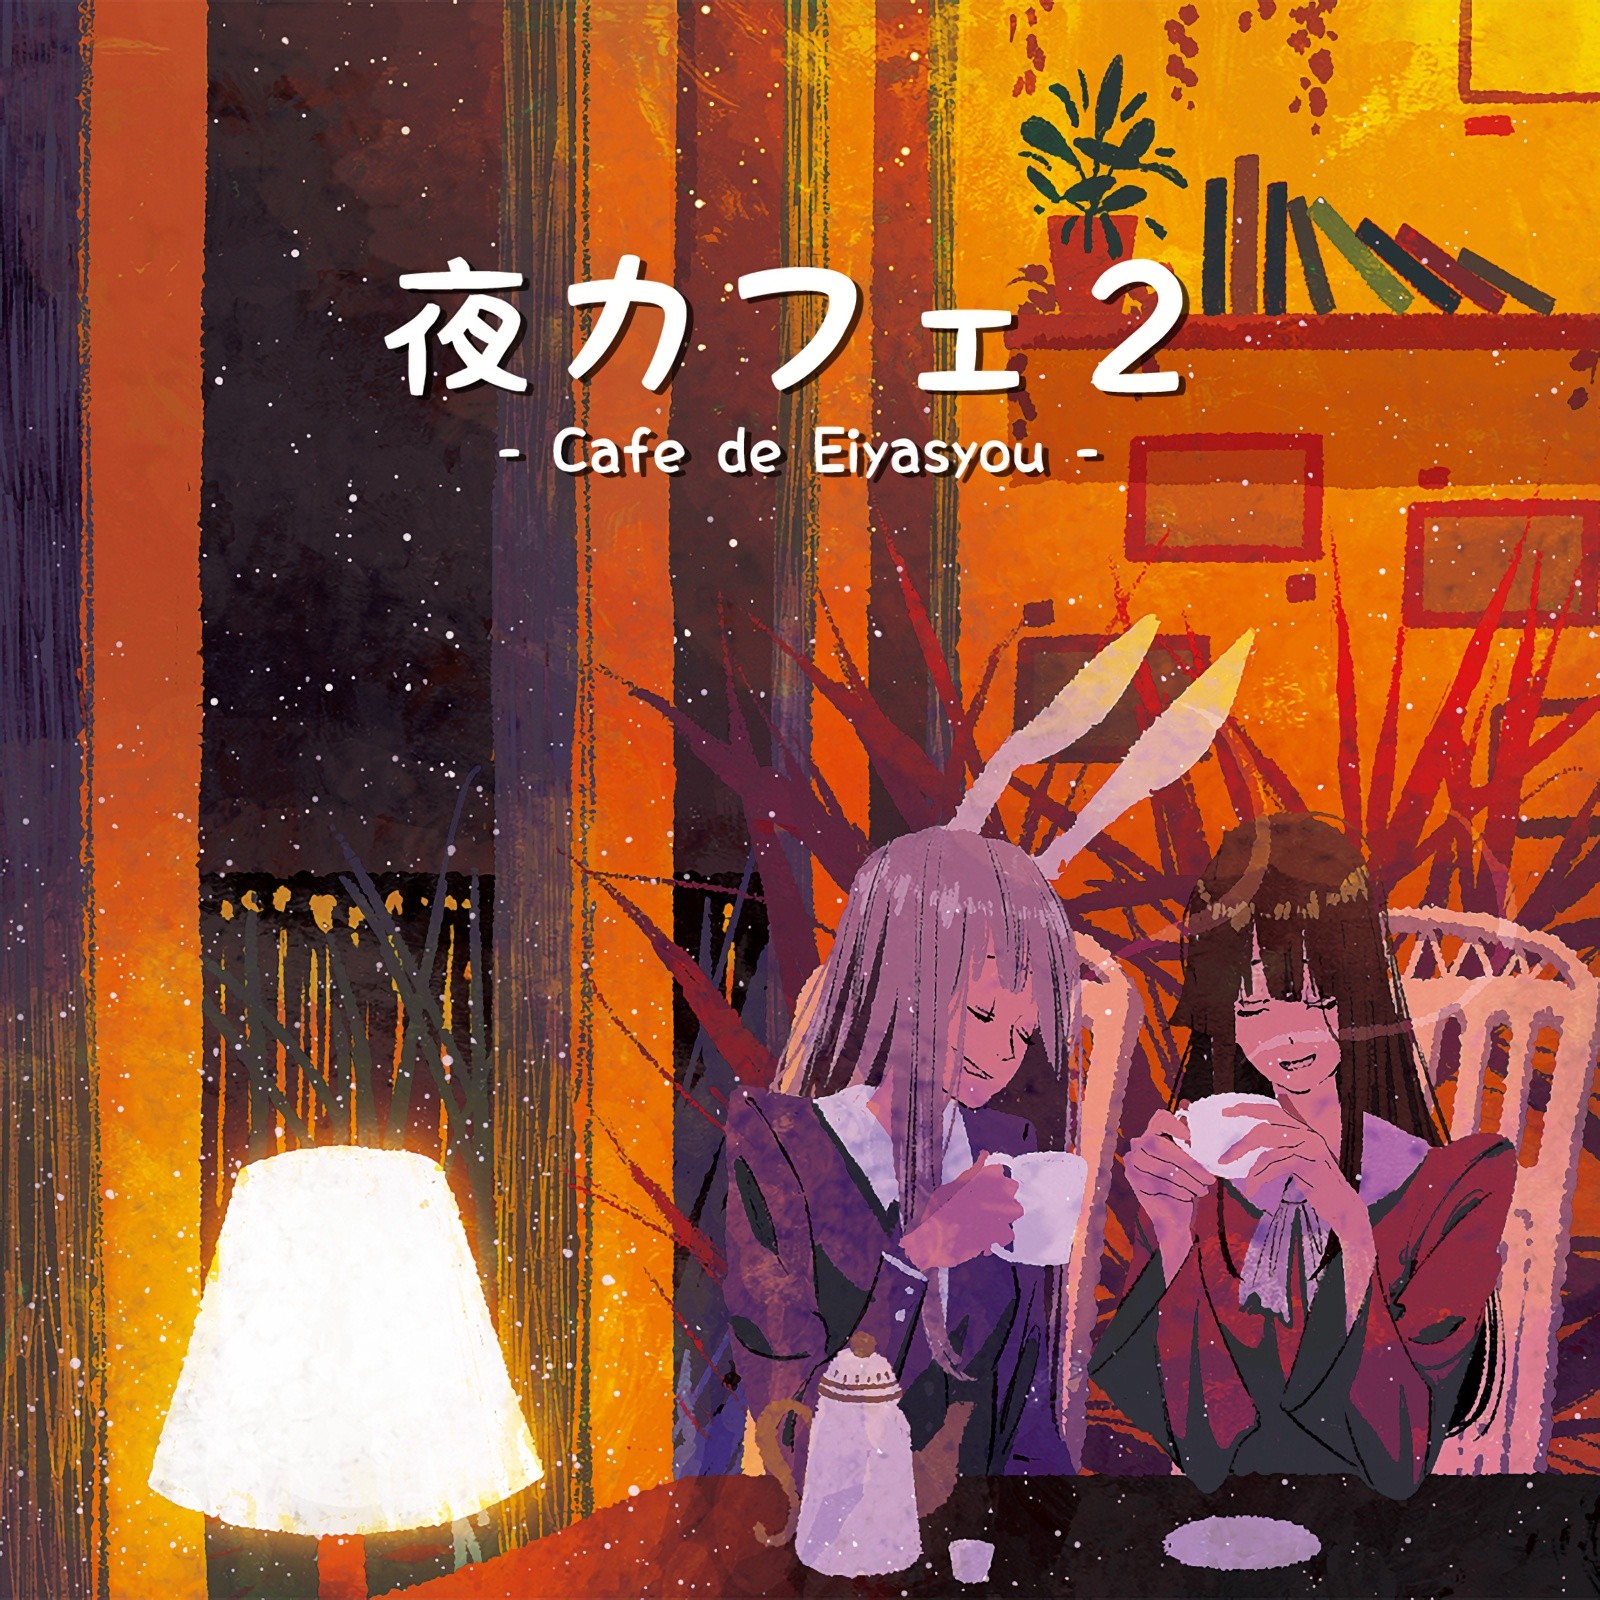 DDBY – 夜カフェ2 -Cafe de Eiyasyou- [FLAC / CD] [2019.08.12]